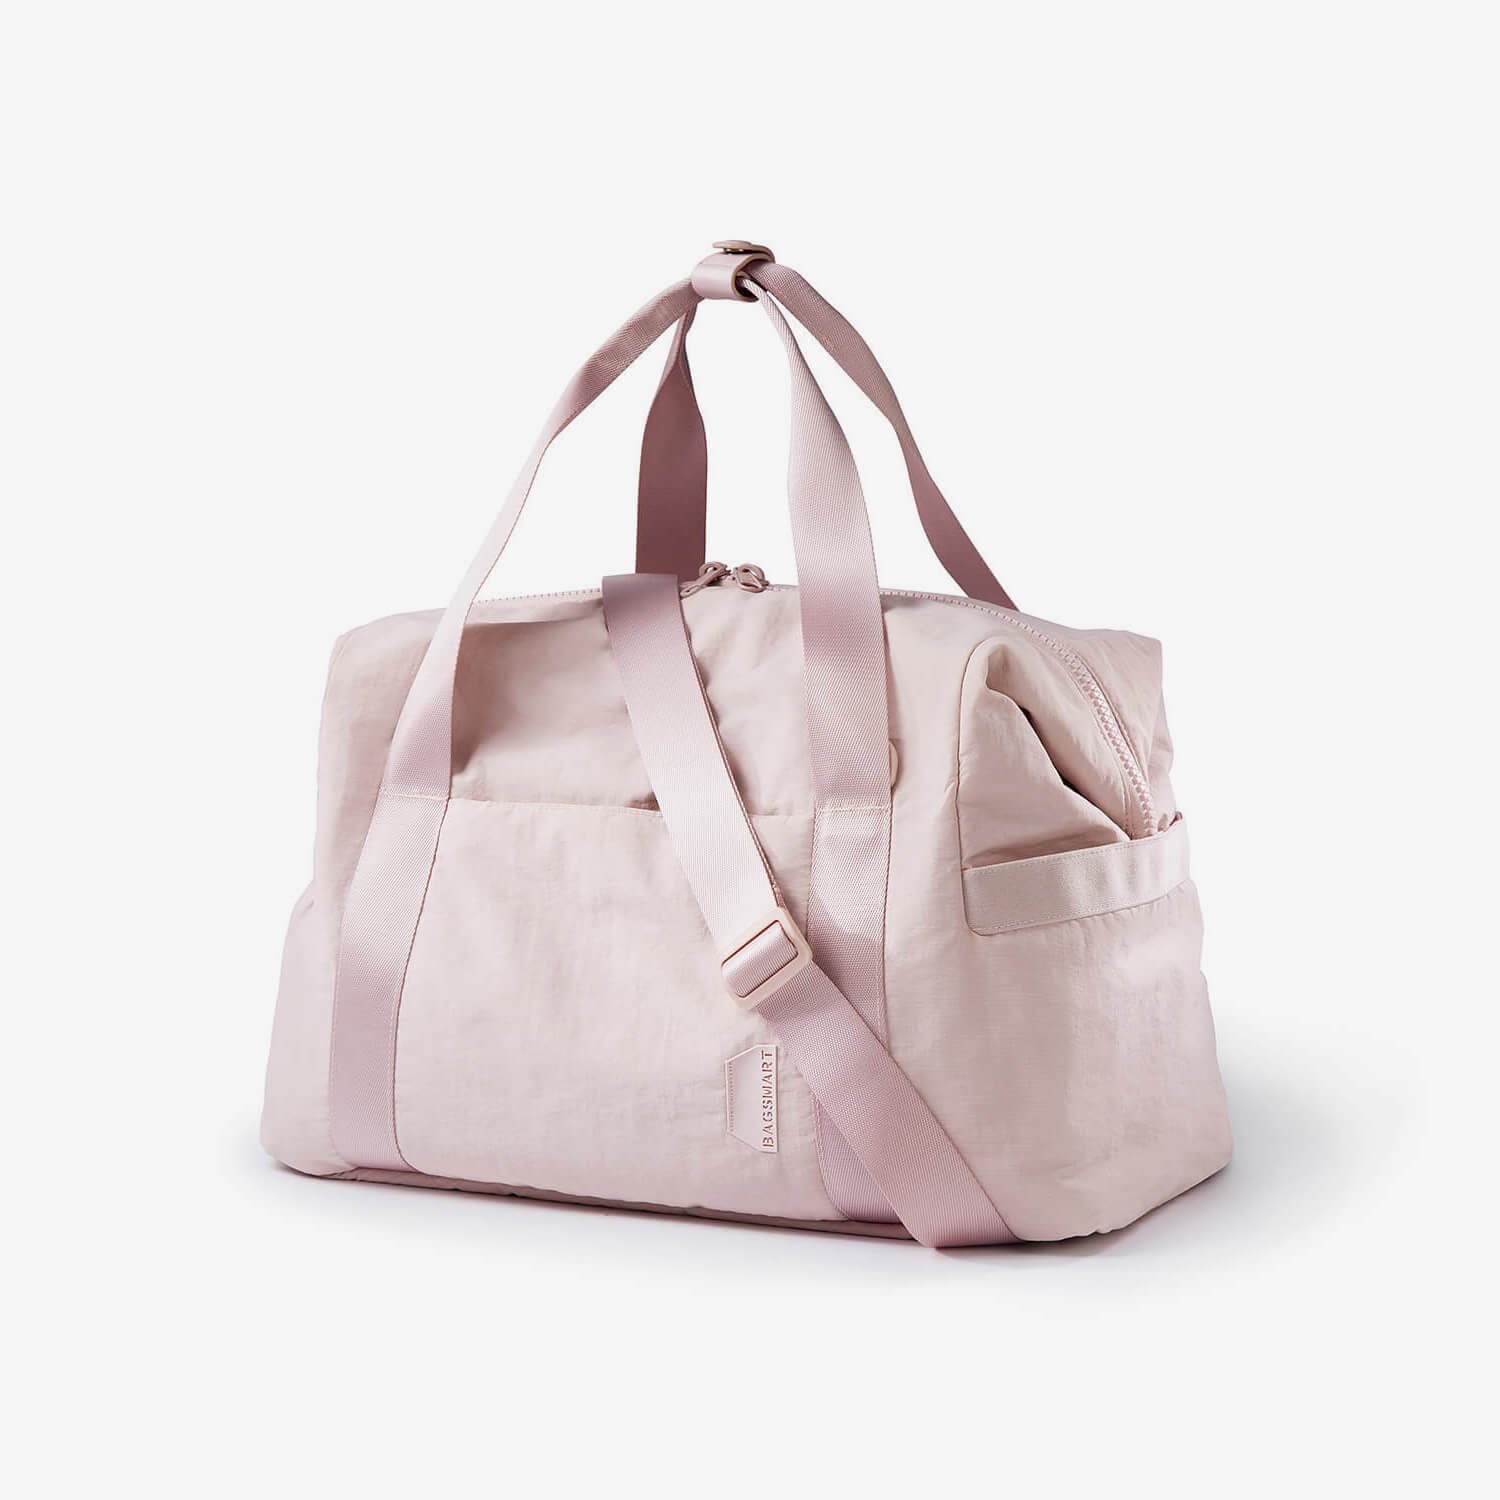 BAGSMART Large Tote Bag for Women, School Shoulder Bag Top Handle Handbag with Yoga Mat Buckle for Gym, Work, Travel, College